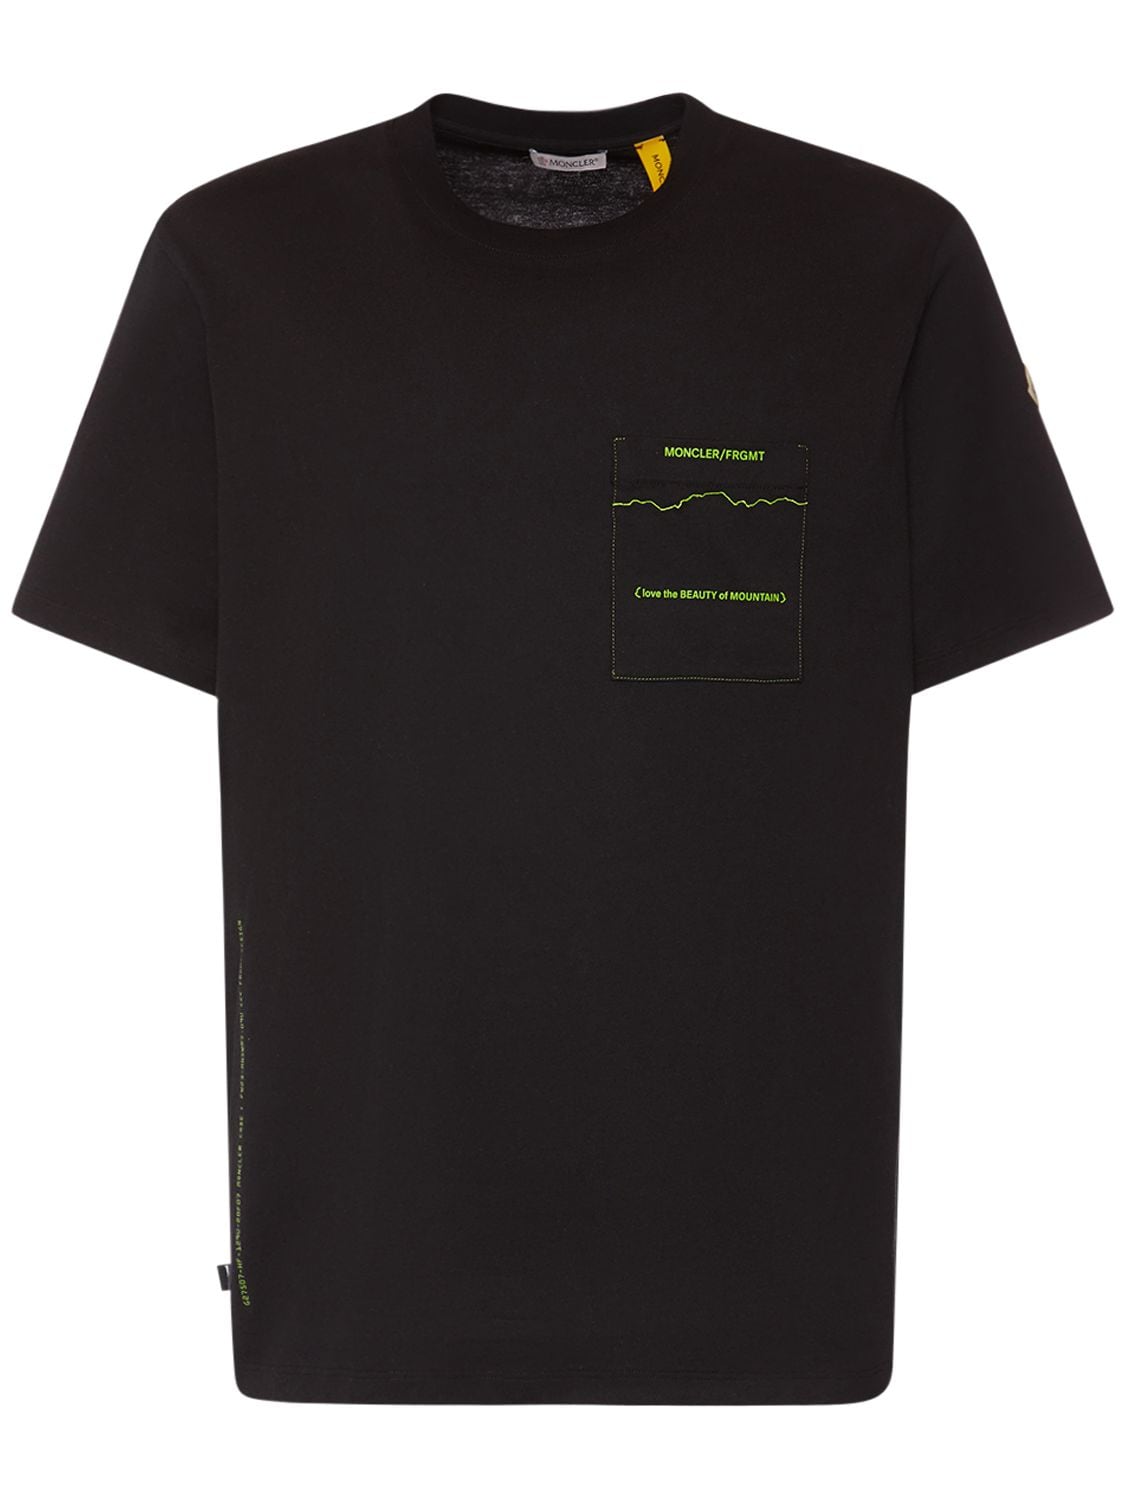 Moncler Genius Moncler X Frgmt Mountain平纹针织t恤 In Black